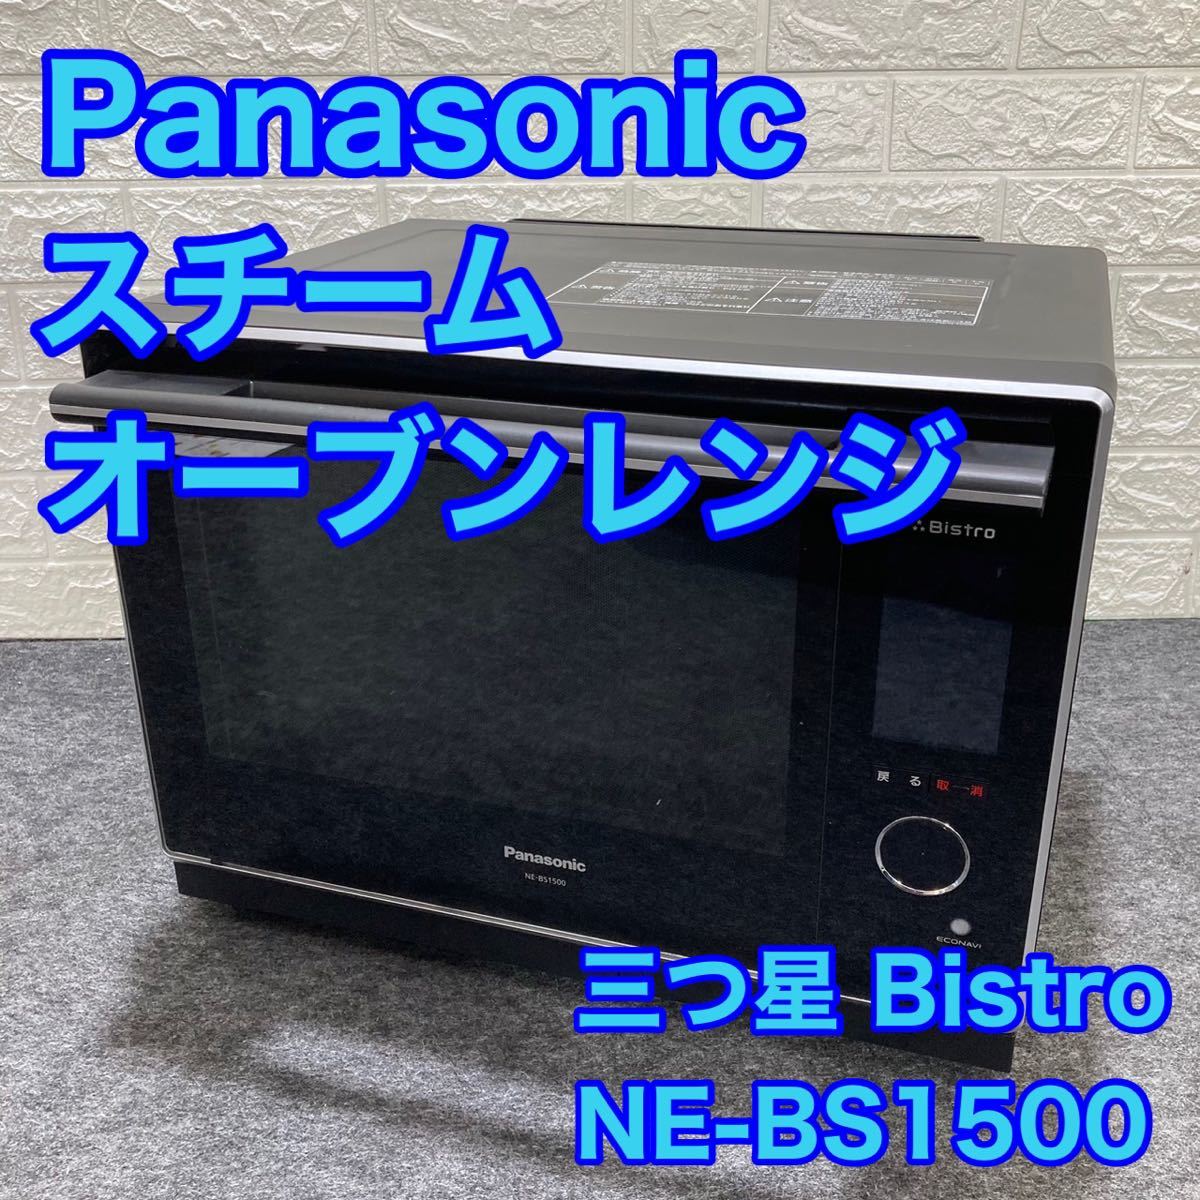 パナソニック 3つ星 ビストロ NE-BS1500 オークション比較 - 価格.com